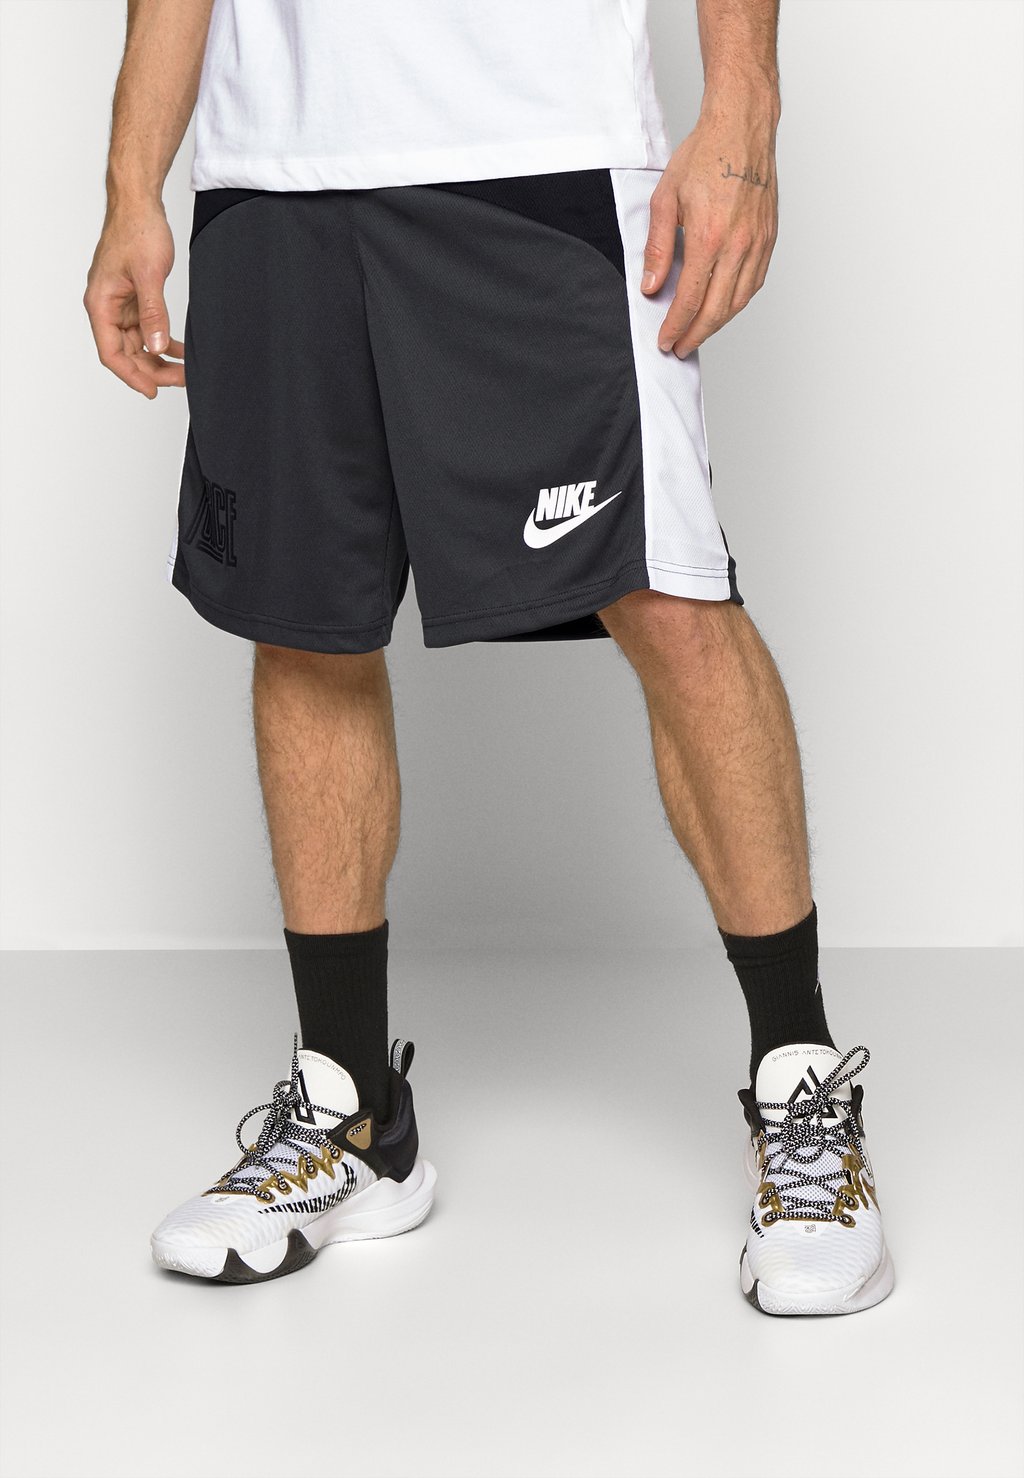 Спортивные шорты START5 SHORT Nike, черный/темно-дымчато-серый/белый